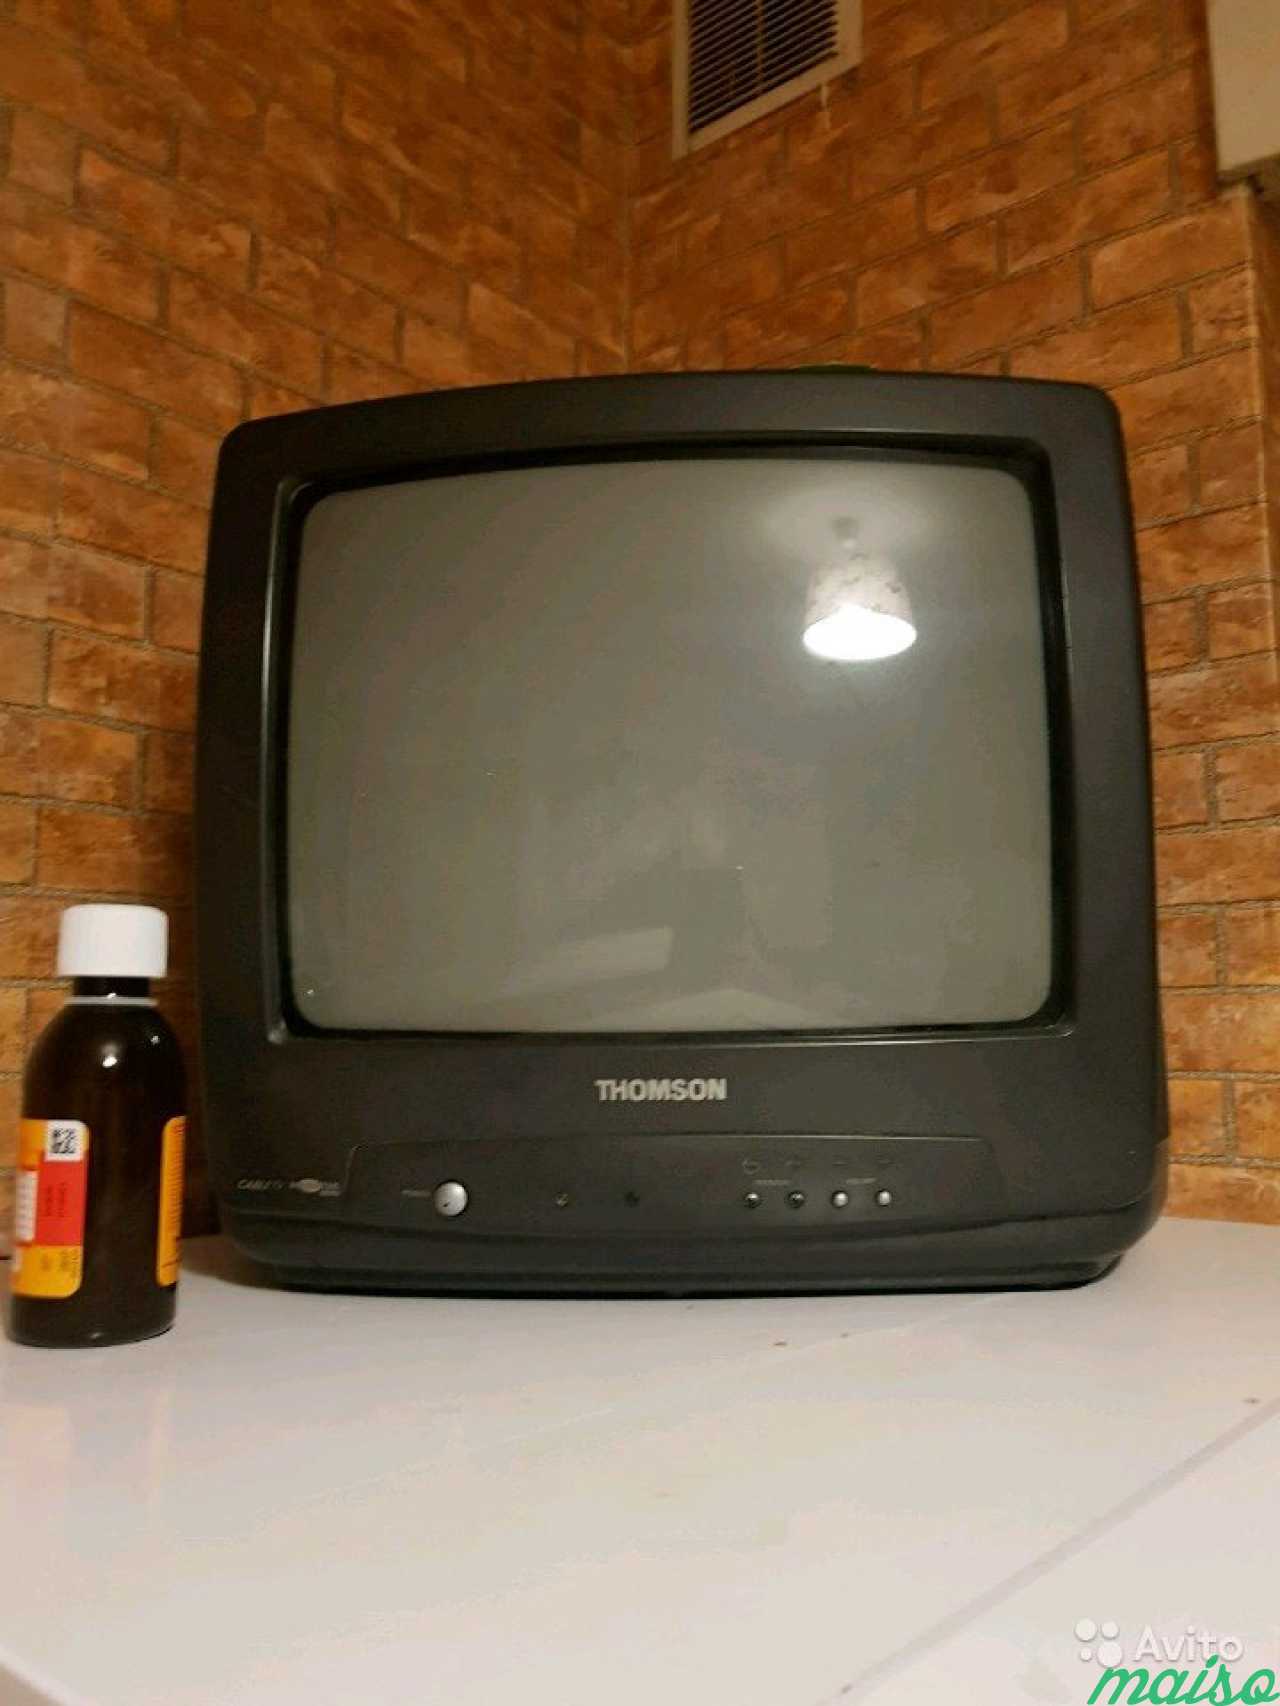 Авито санкт петербурге телевизоры. Телевизор авито. Самый маленький дешевый телевизор за 500 рублей. Телевизор СПБ. Авито телевизоры б/у.